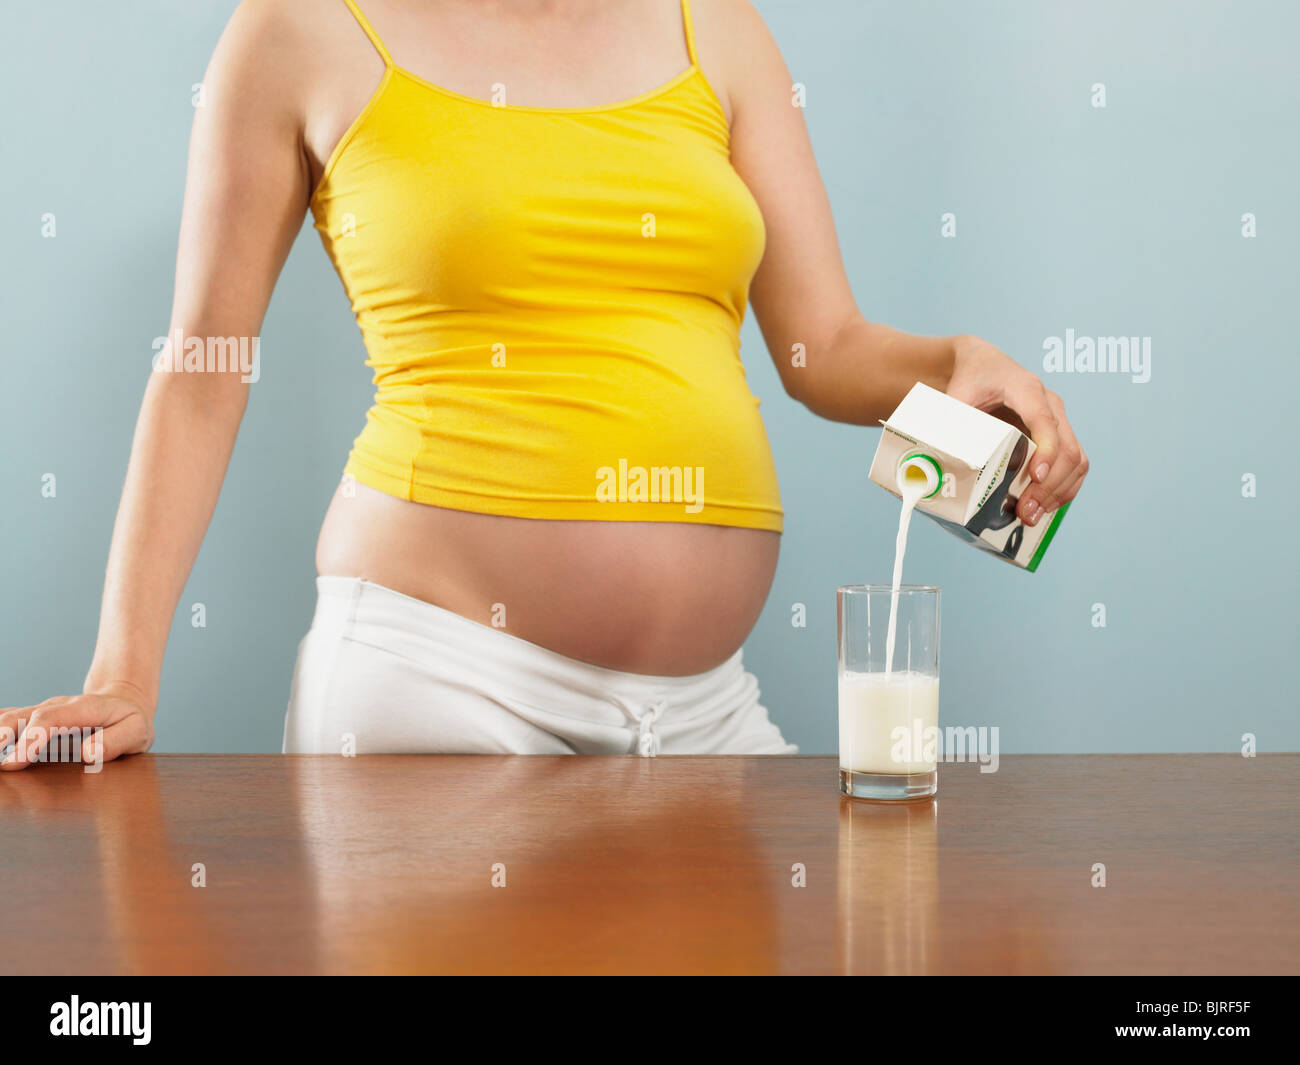 Что пить от изжоги беременным